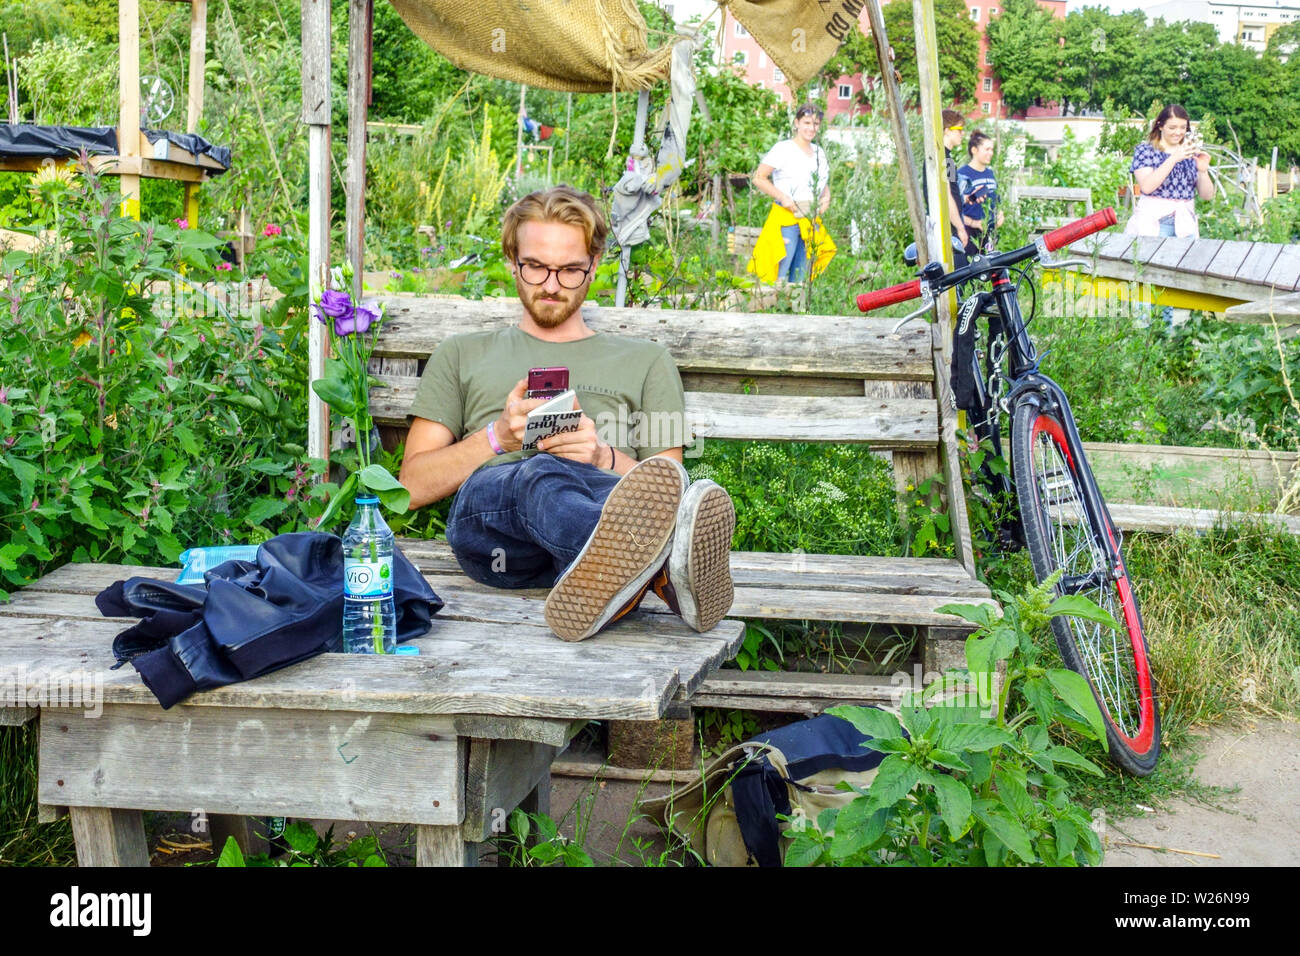 Il giovane si gode in un giardino comunitario sul campo Tempelhof, Berlino-Neukölln, Germania giardino comunitario Europa Foto Stock